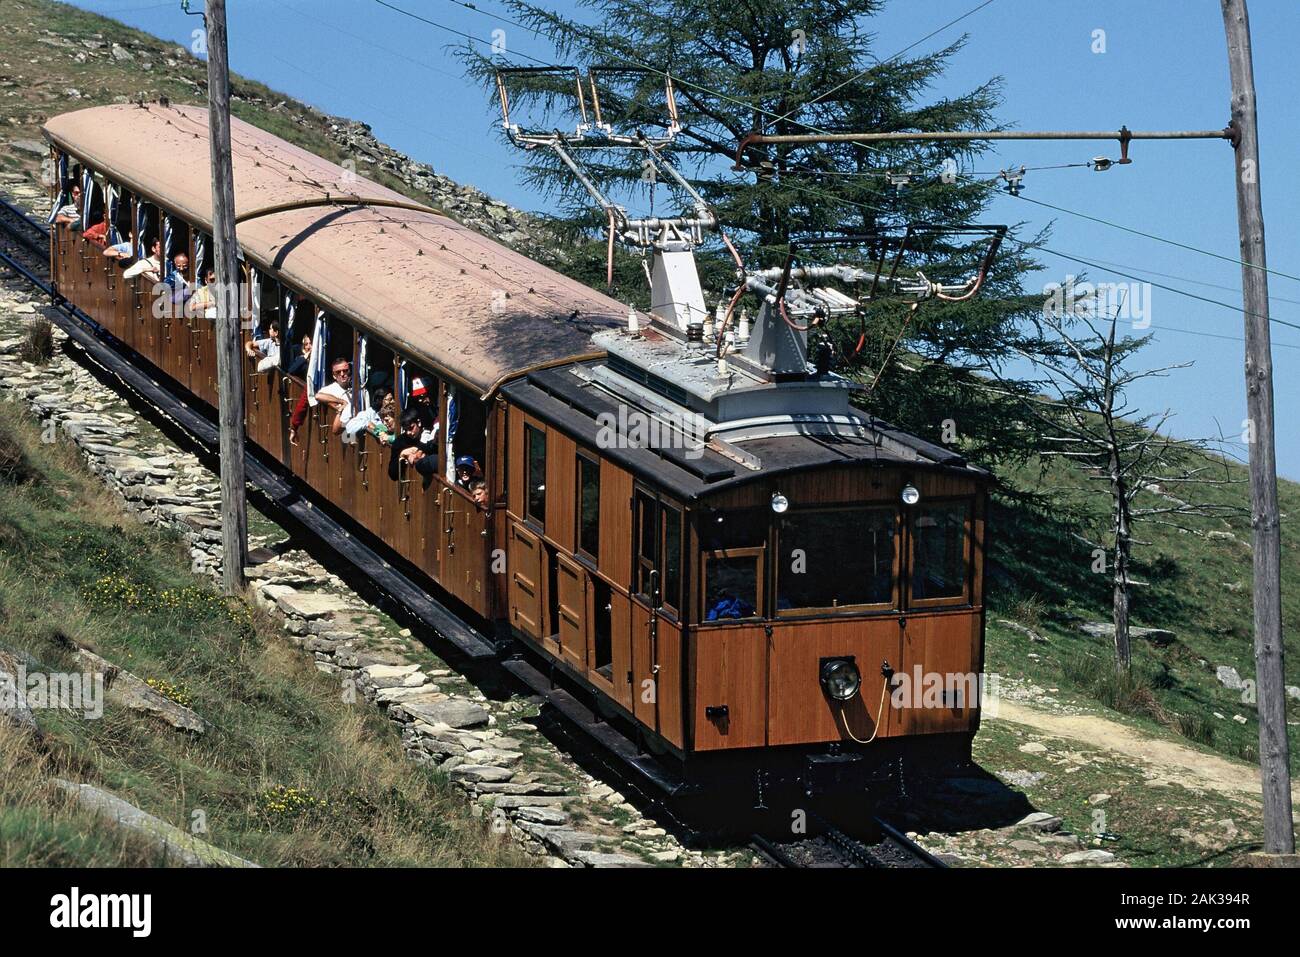 Vue sur le train à crémaillère conduisant au sommet de la crête frontière élevée à 900 mètres de La Rhune, qui est une montagne sacrée pour les Basques. De son sommet on vo Banque D'Images